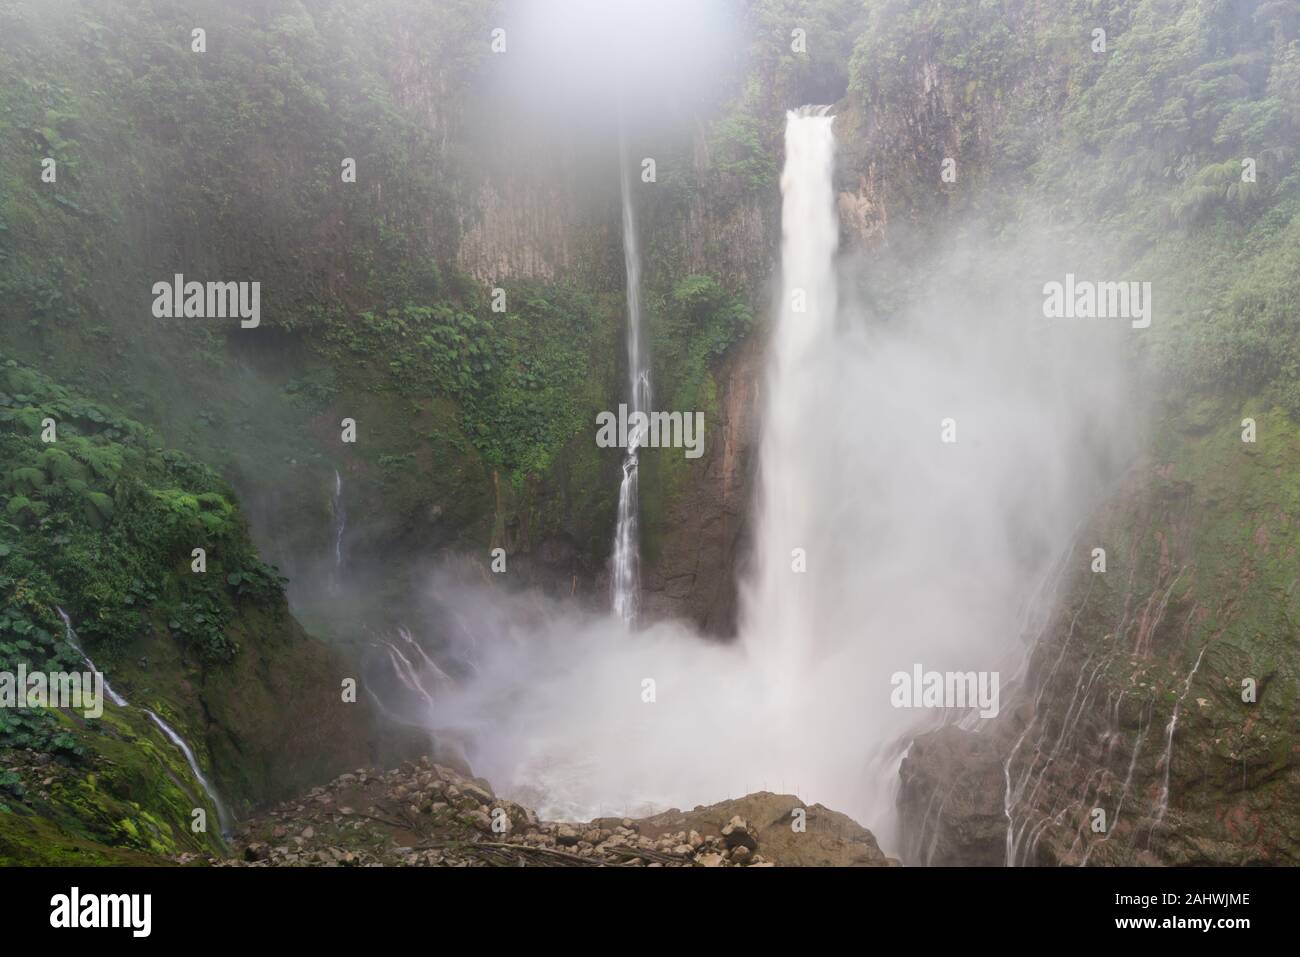 Catarata del Toro waterfall in Costa Rica Stock Photo